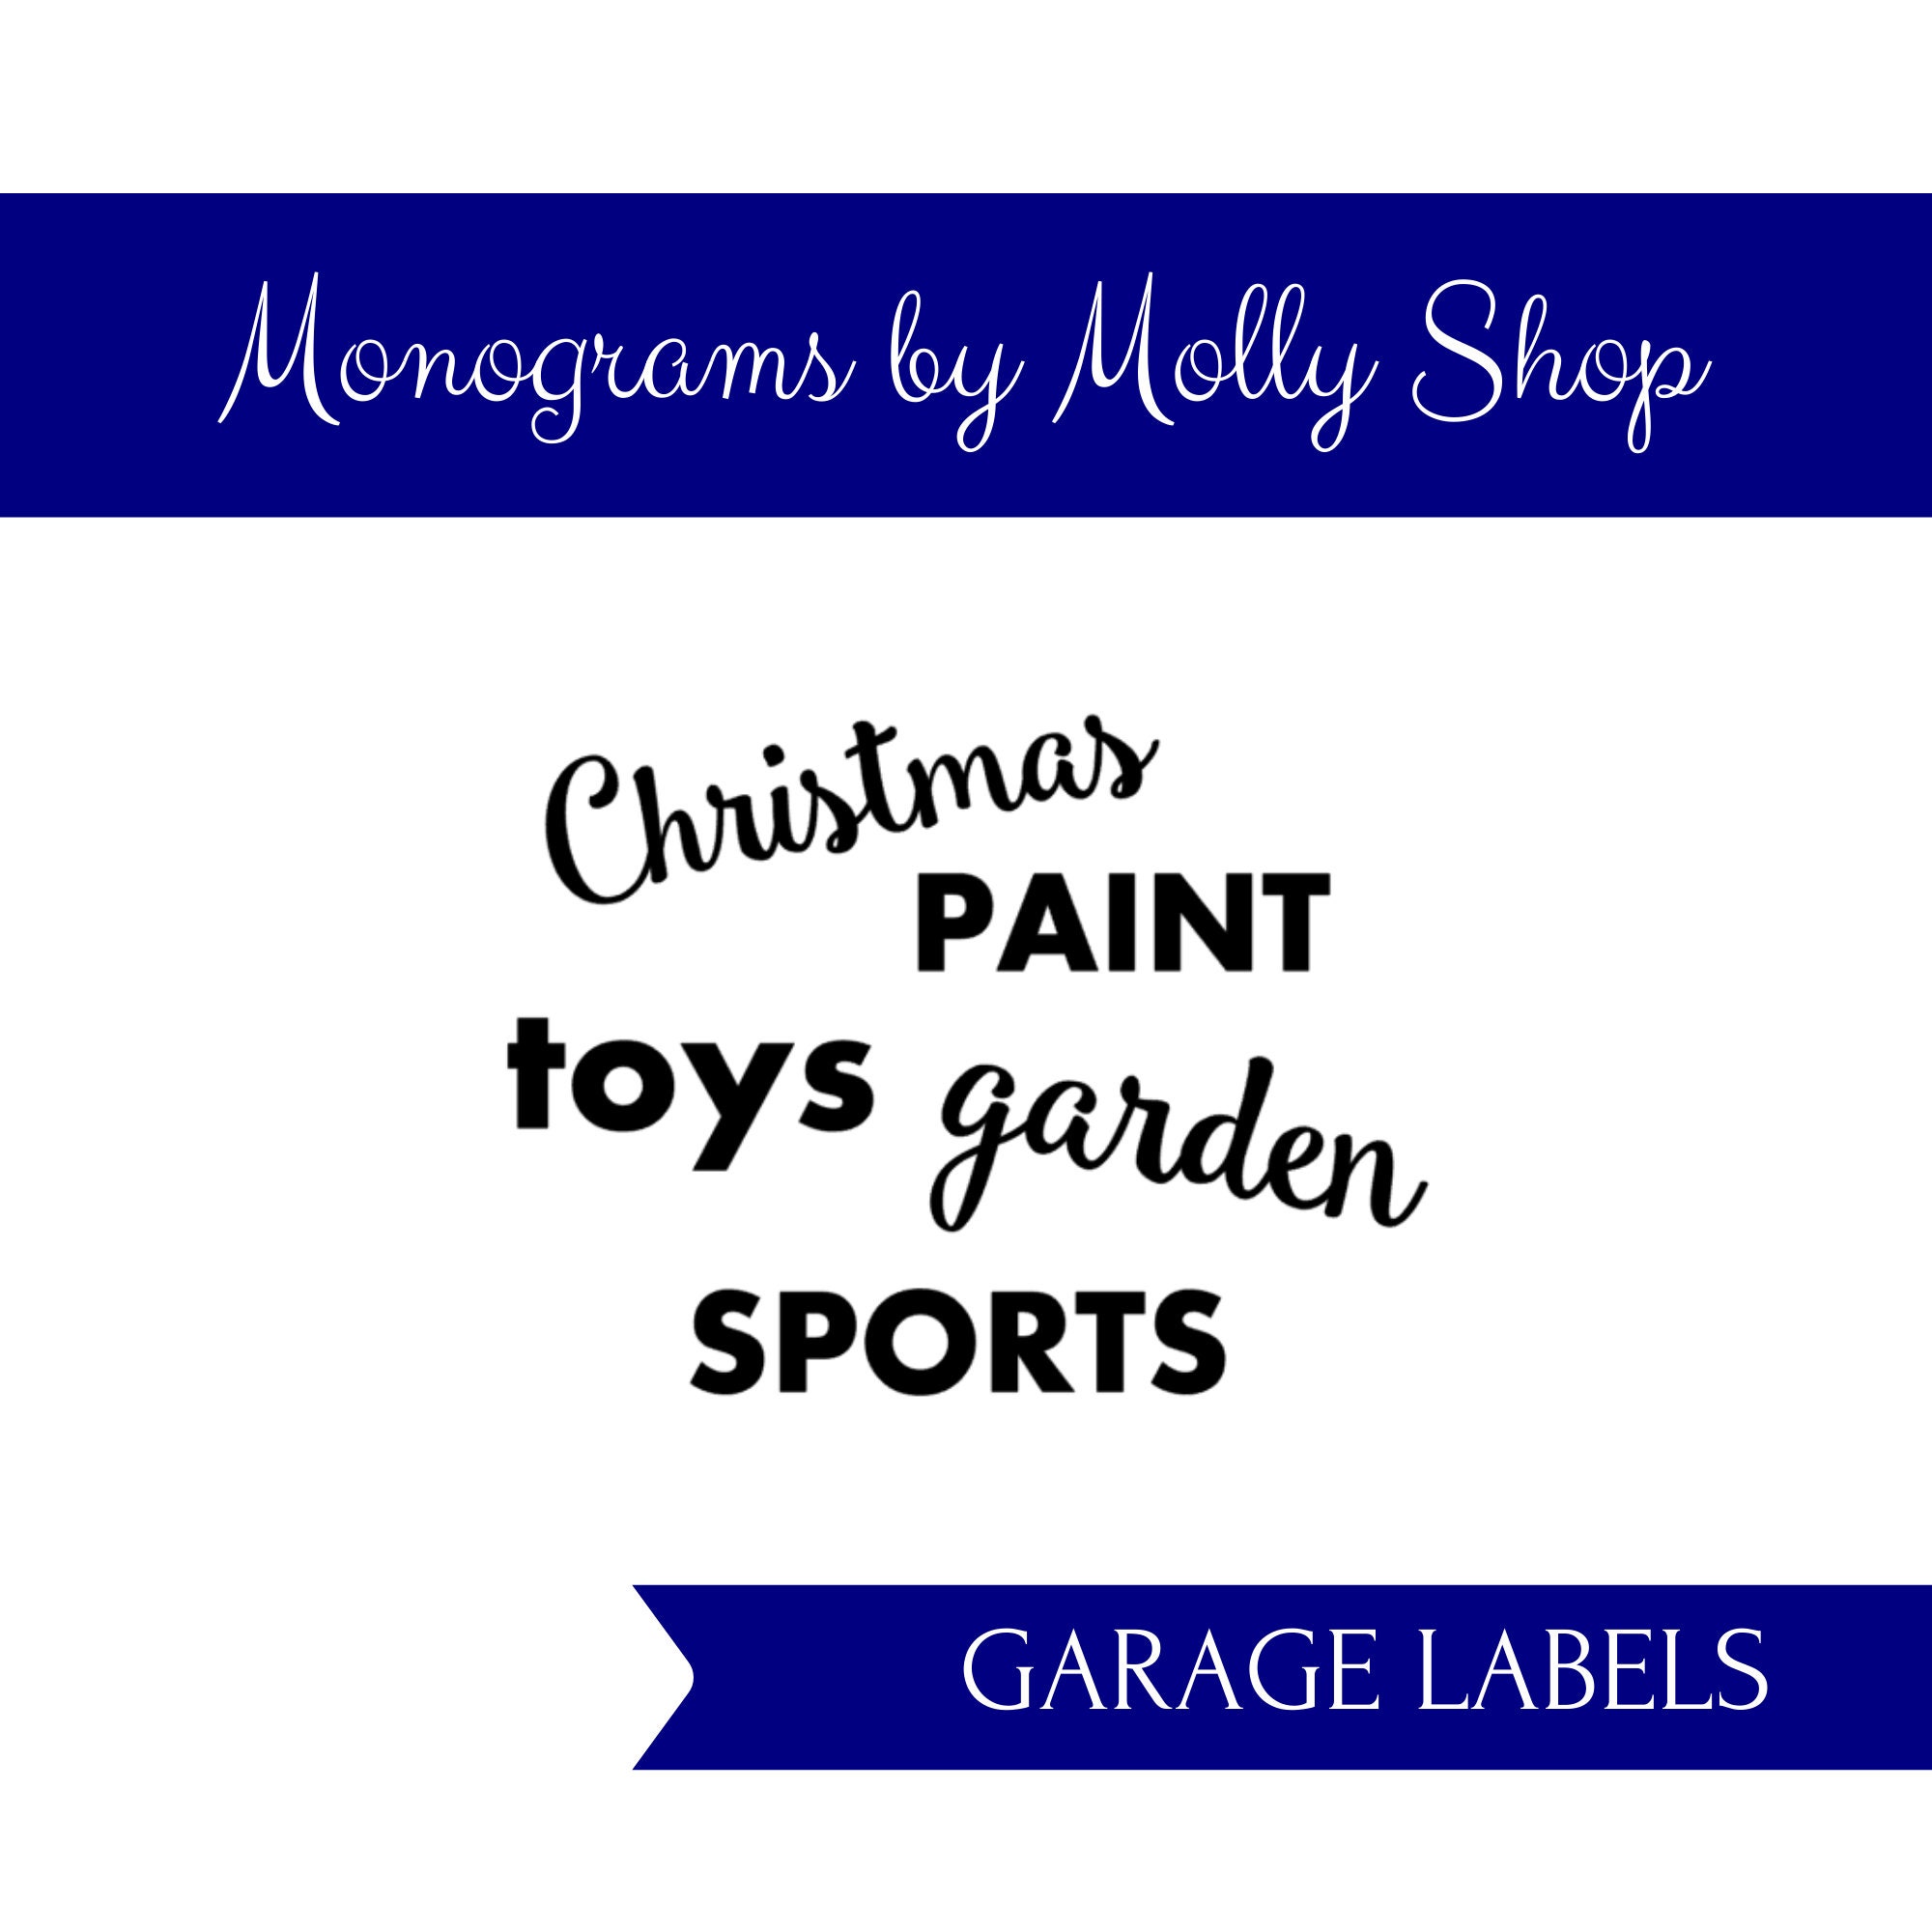 Shop Custom Garage Organisation and Storage Image Labels